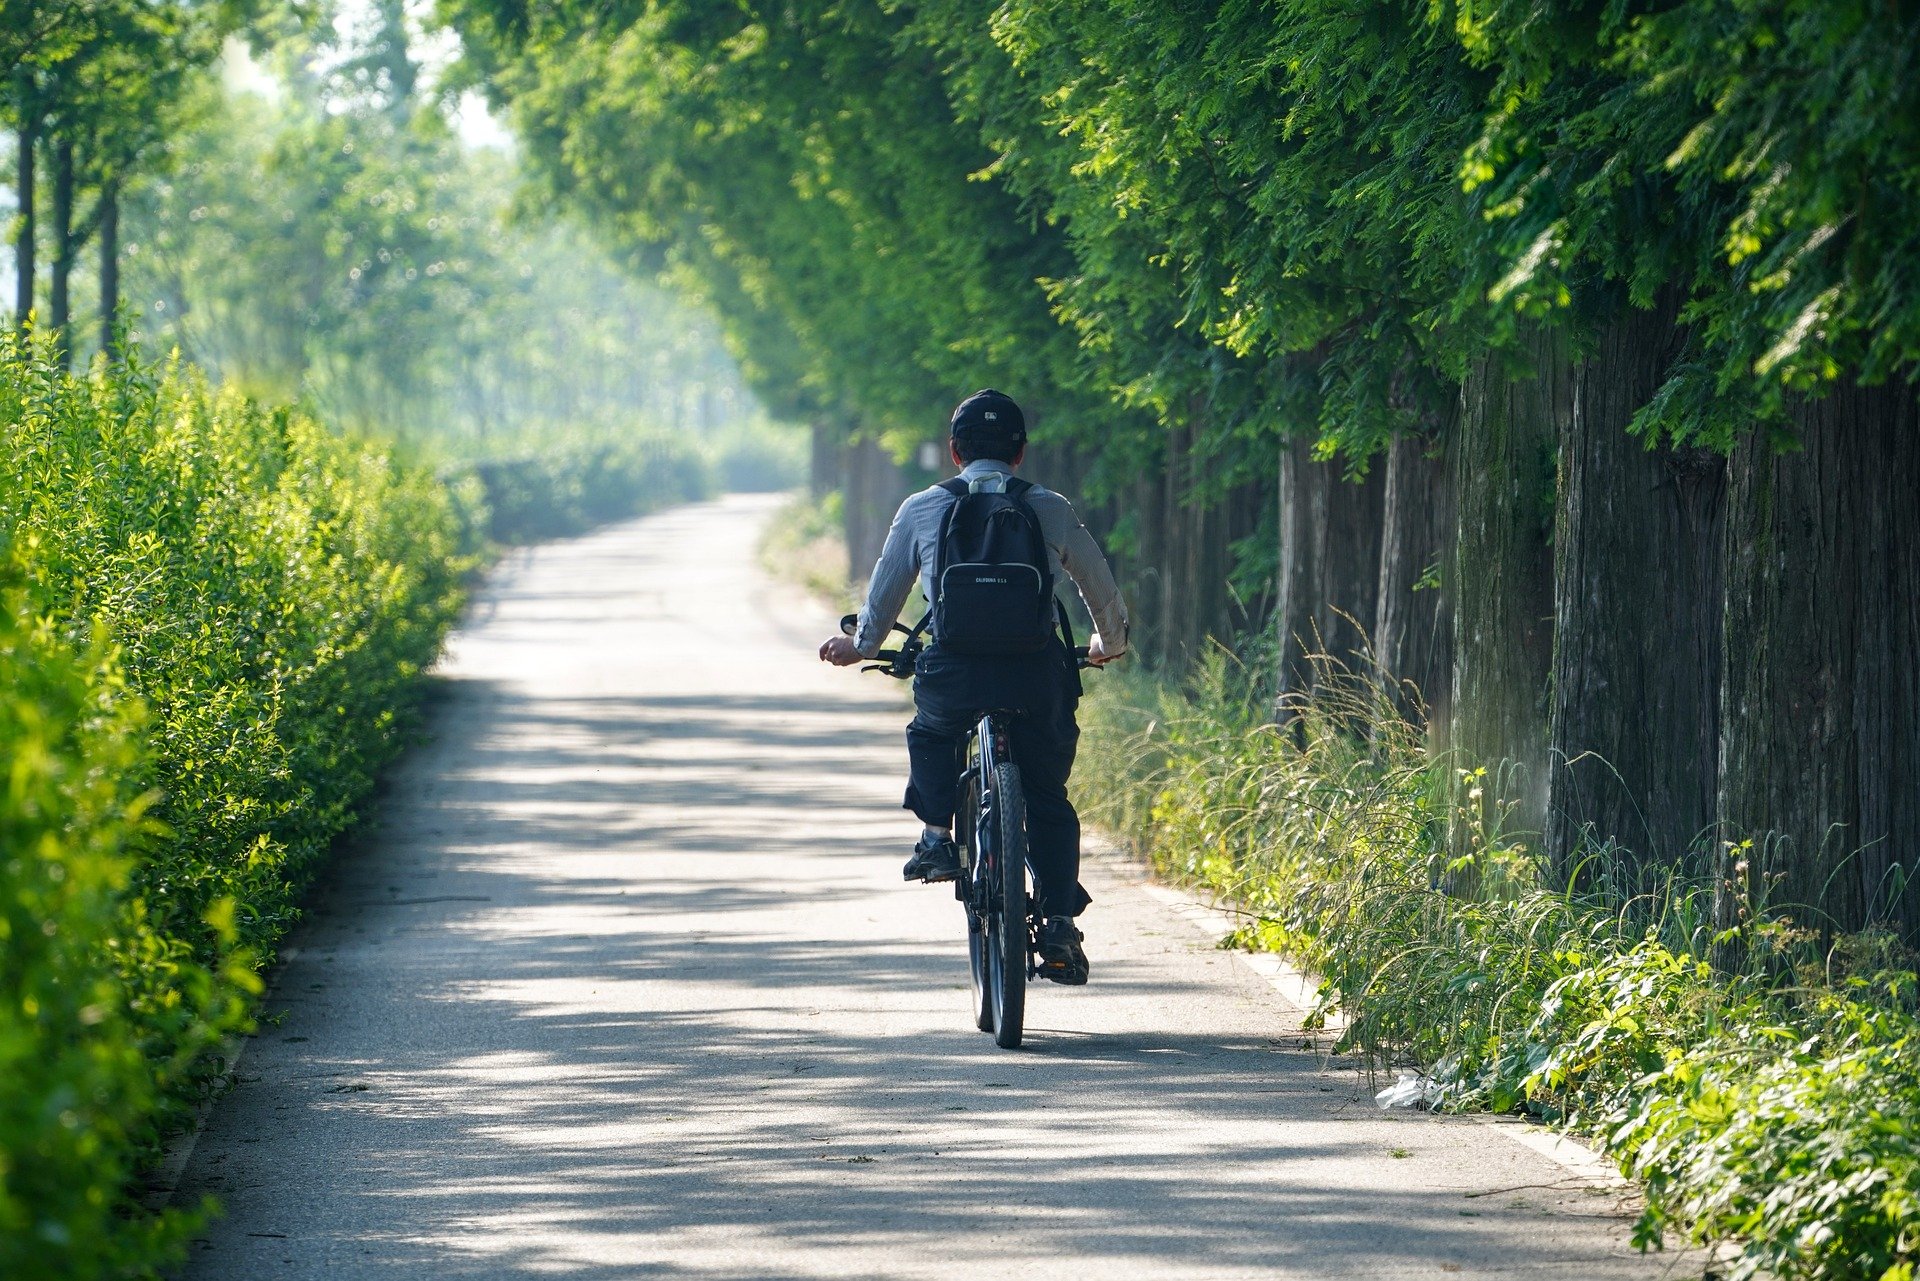 양쪽으로 나무와 숲이 우거진 한적한 길에서 모자와 가방을 맨 남성이 혼자 자전거를 타고 가고 있는 모습을 찍은 사진